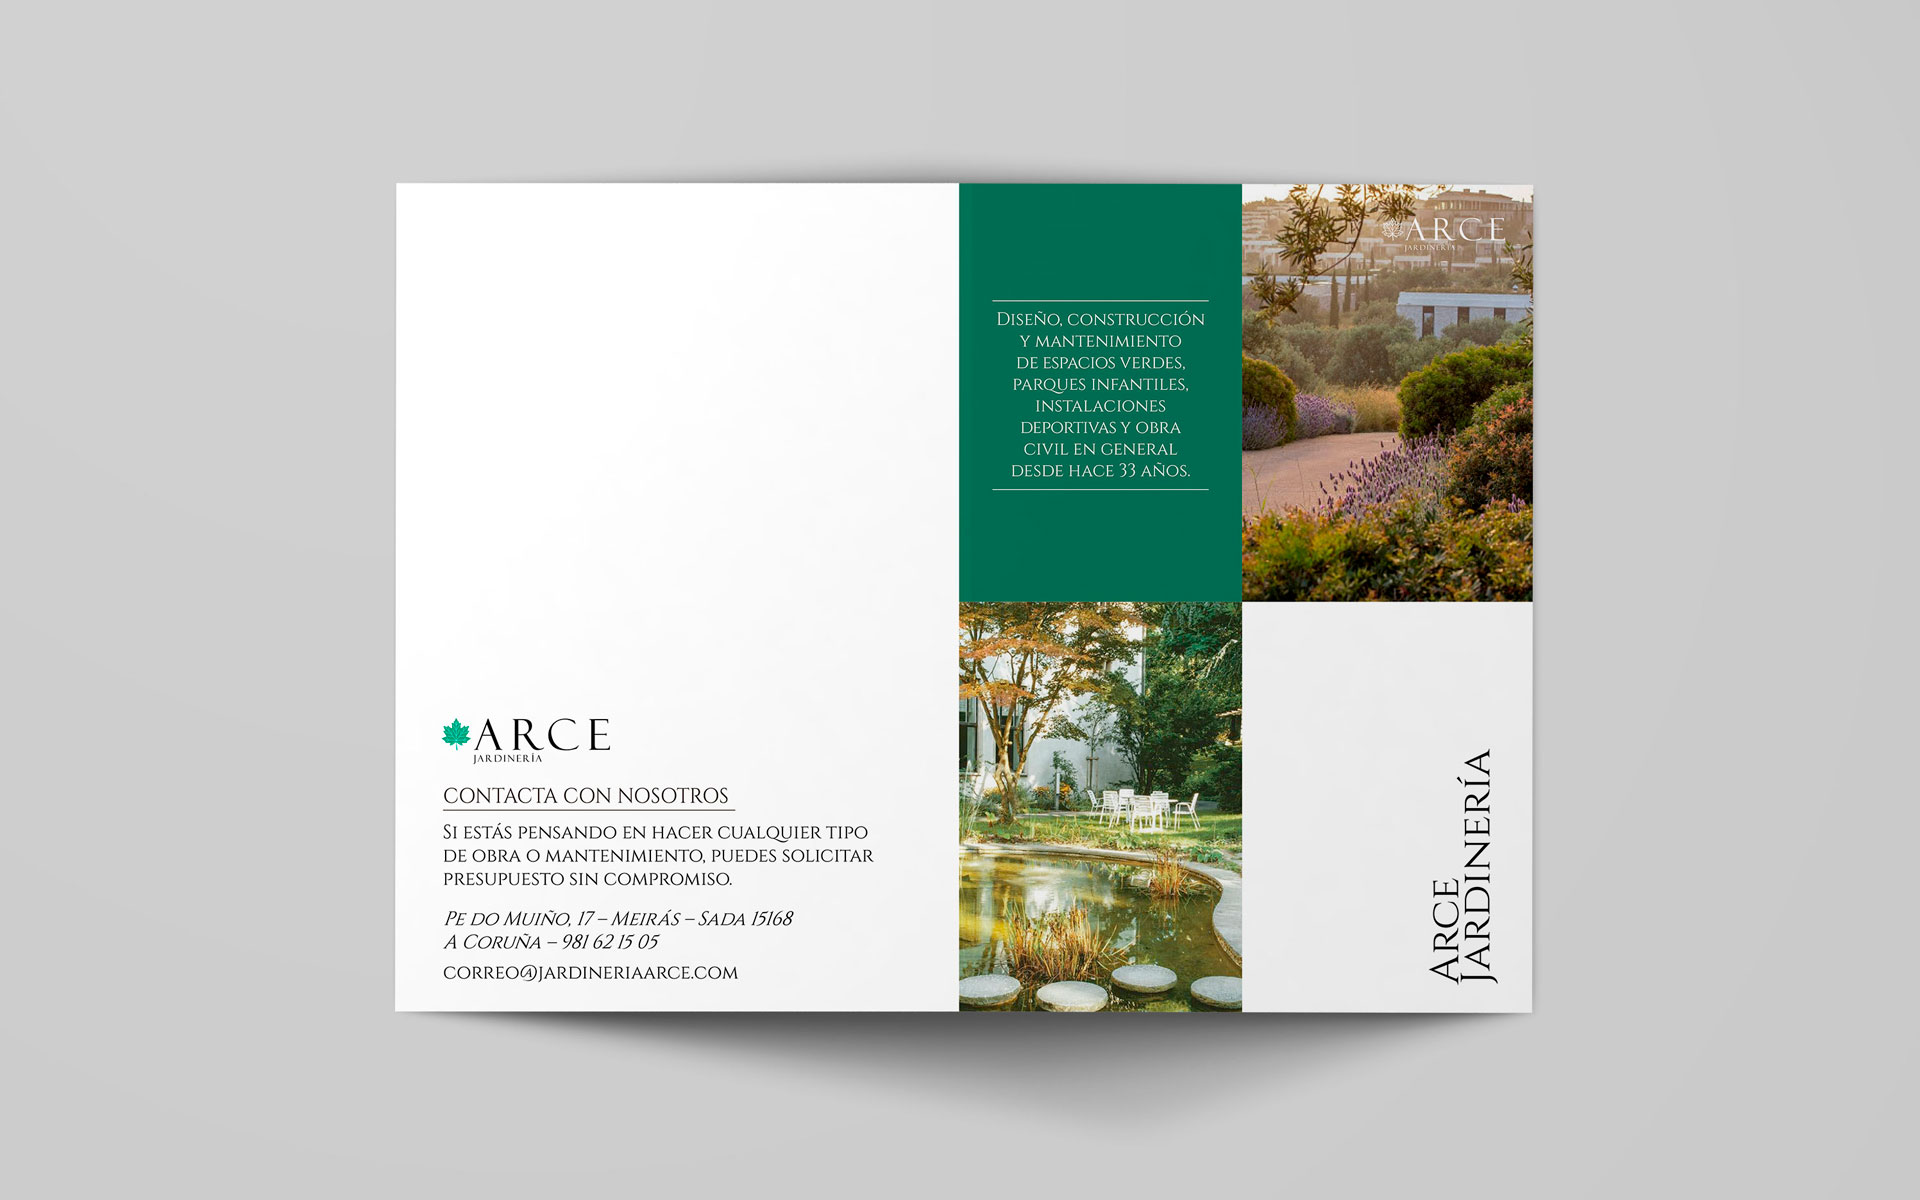 Jardineria Arce, folleto promocional